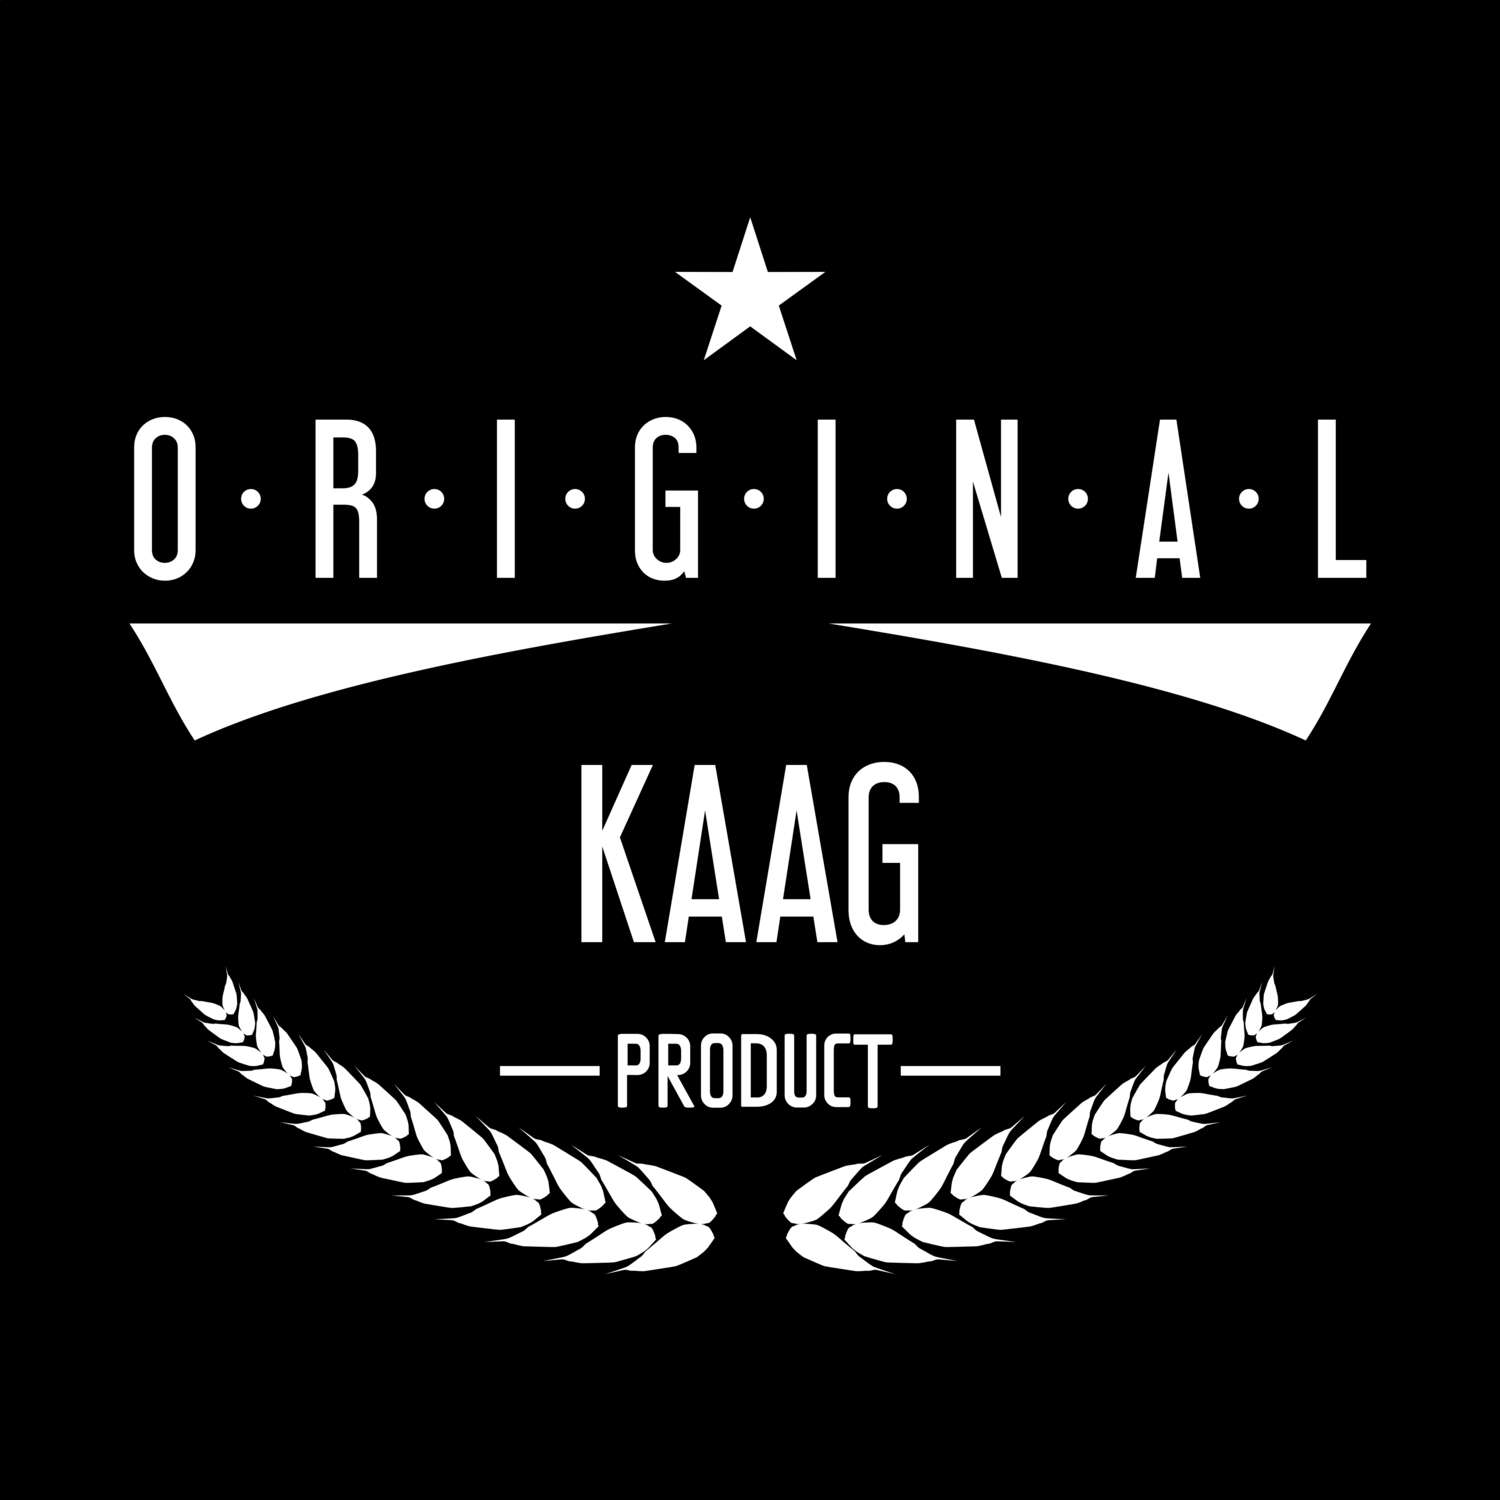 Kaag T-Shirt »Original Product«